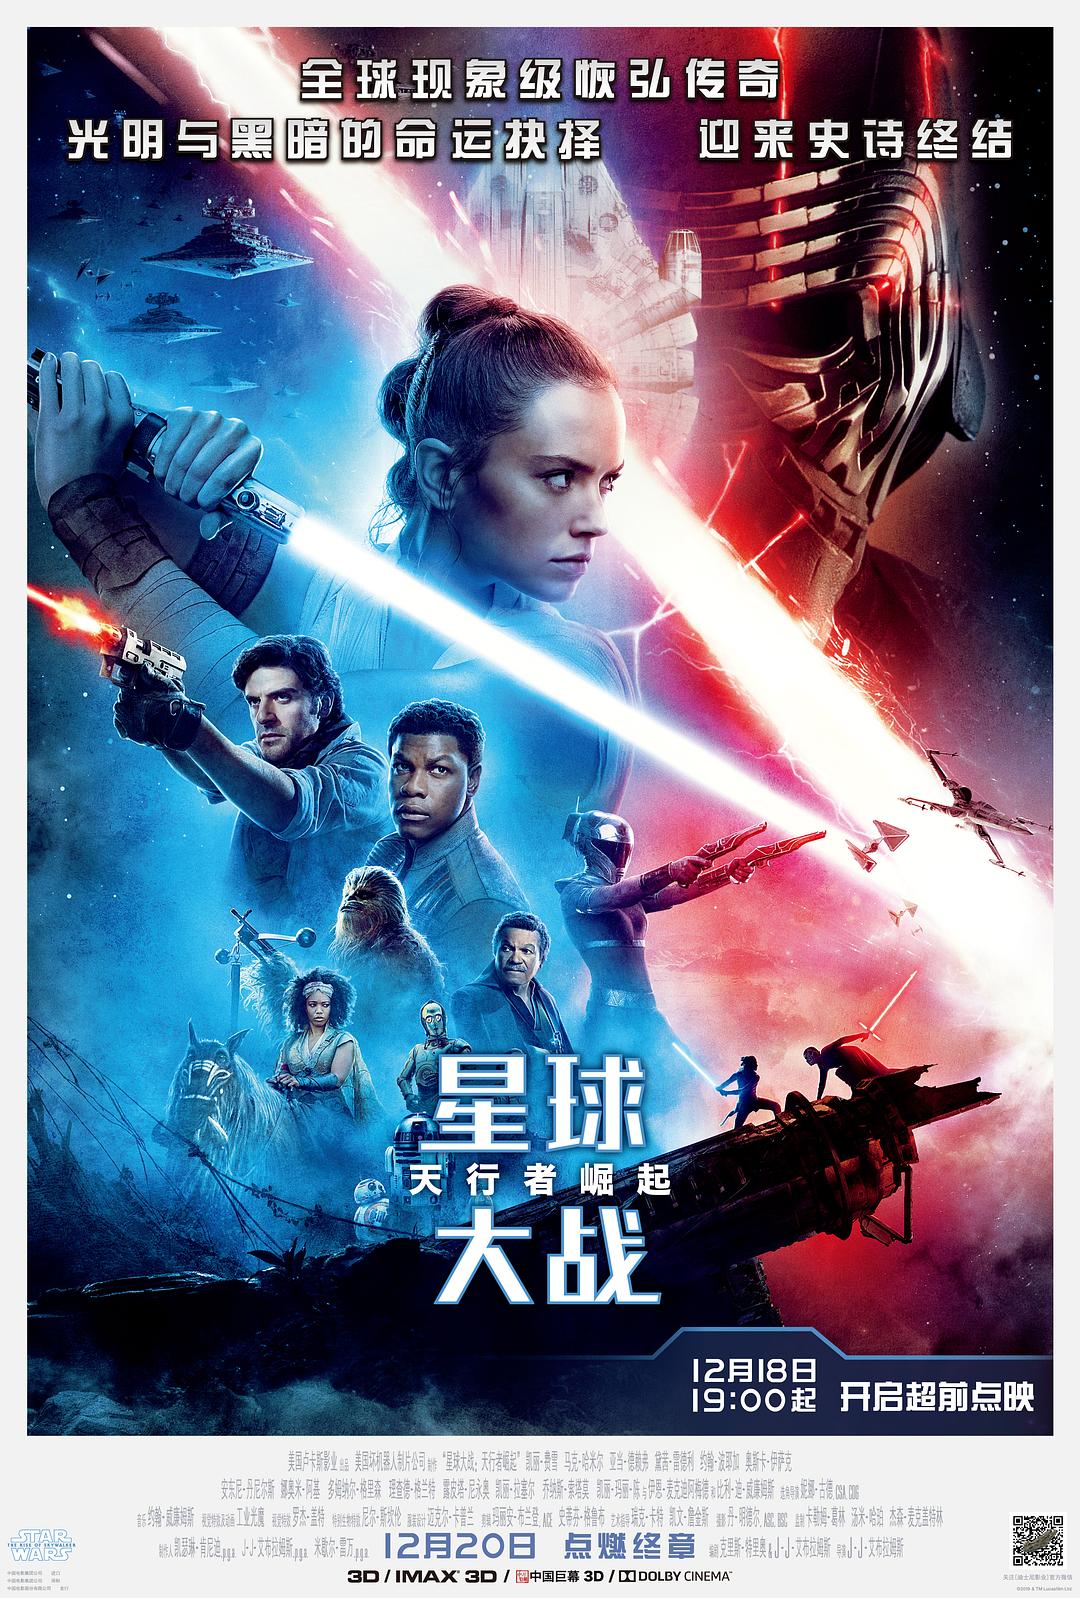 星球大战9:天行者突起 Star.Wars.Episode.IX.The.Rise.of.Skywalker.2019.1080p.3D.BluRay.Half-OU.x264.TrueHD.7.1.Atmos-FGT 23.52GB-1.png